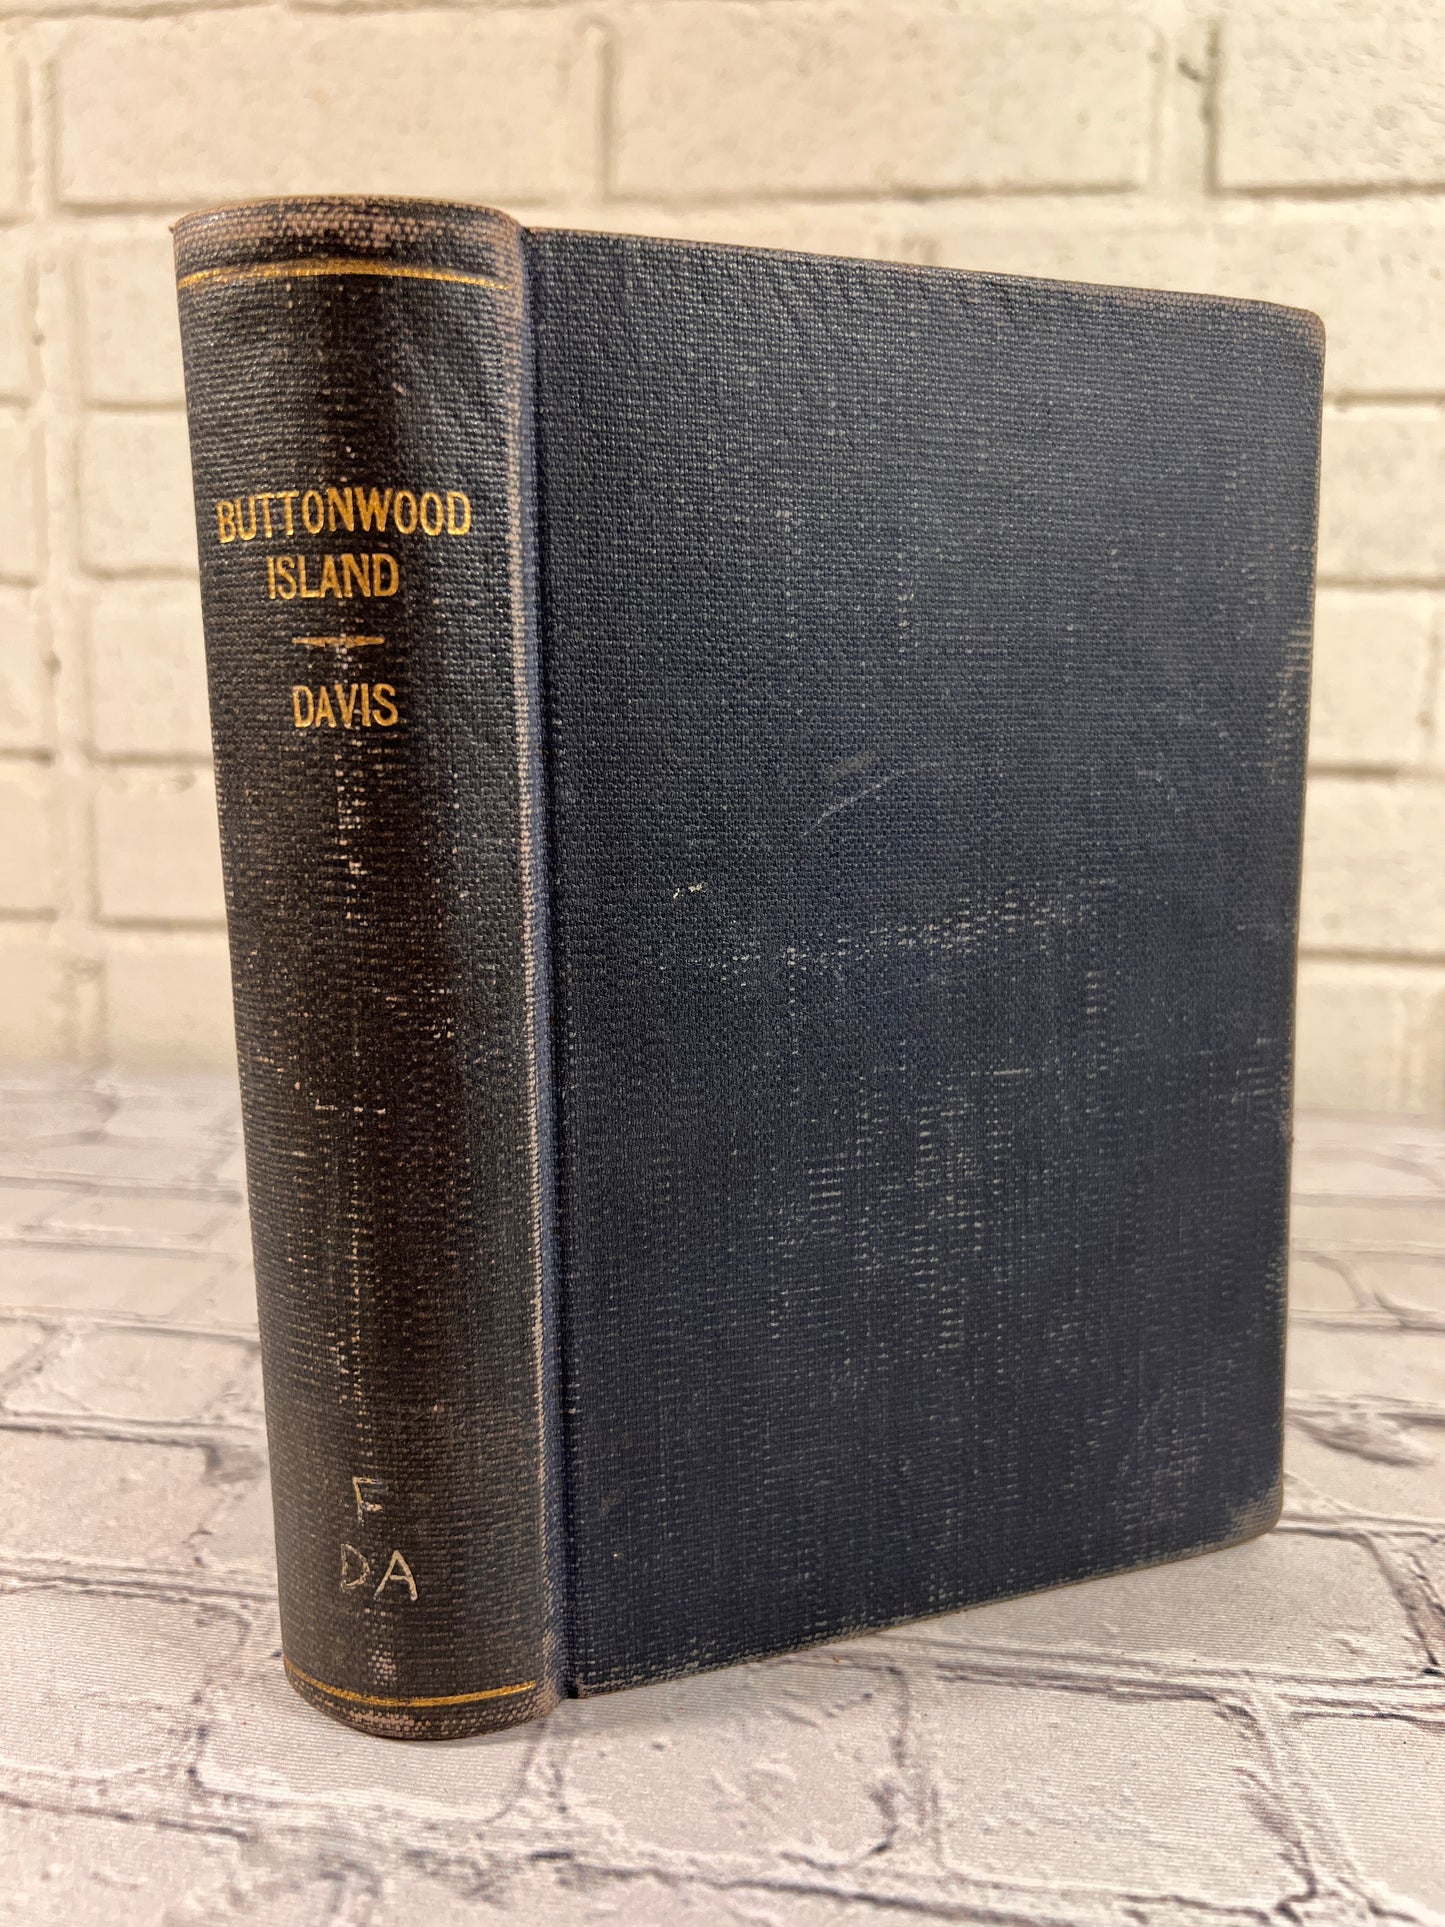 Buttonwood Island by Lavinia R. Davis [1940 · 1st Edition]